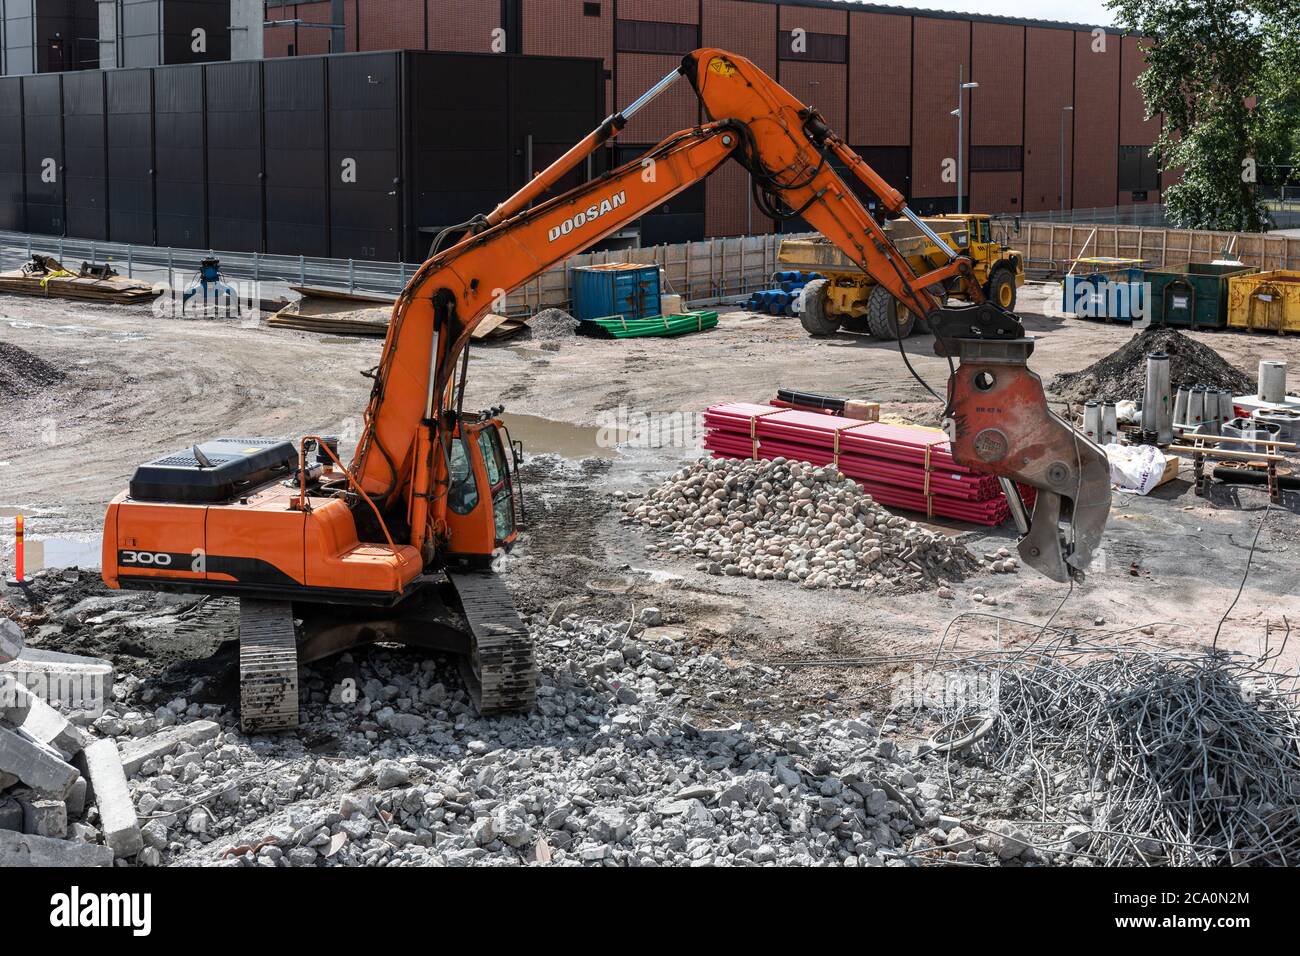 Pelle hydraulique triant les déchets de démolition et recyclant les métaux à Helsinki, en Finlande Banque D'Images